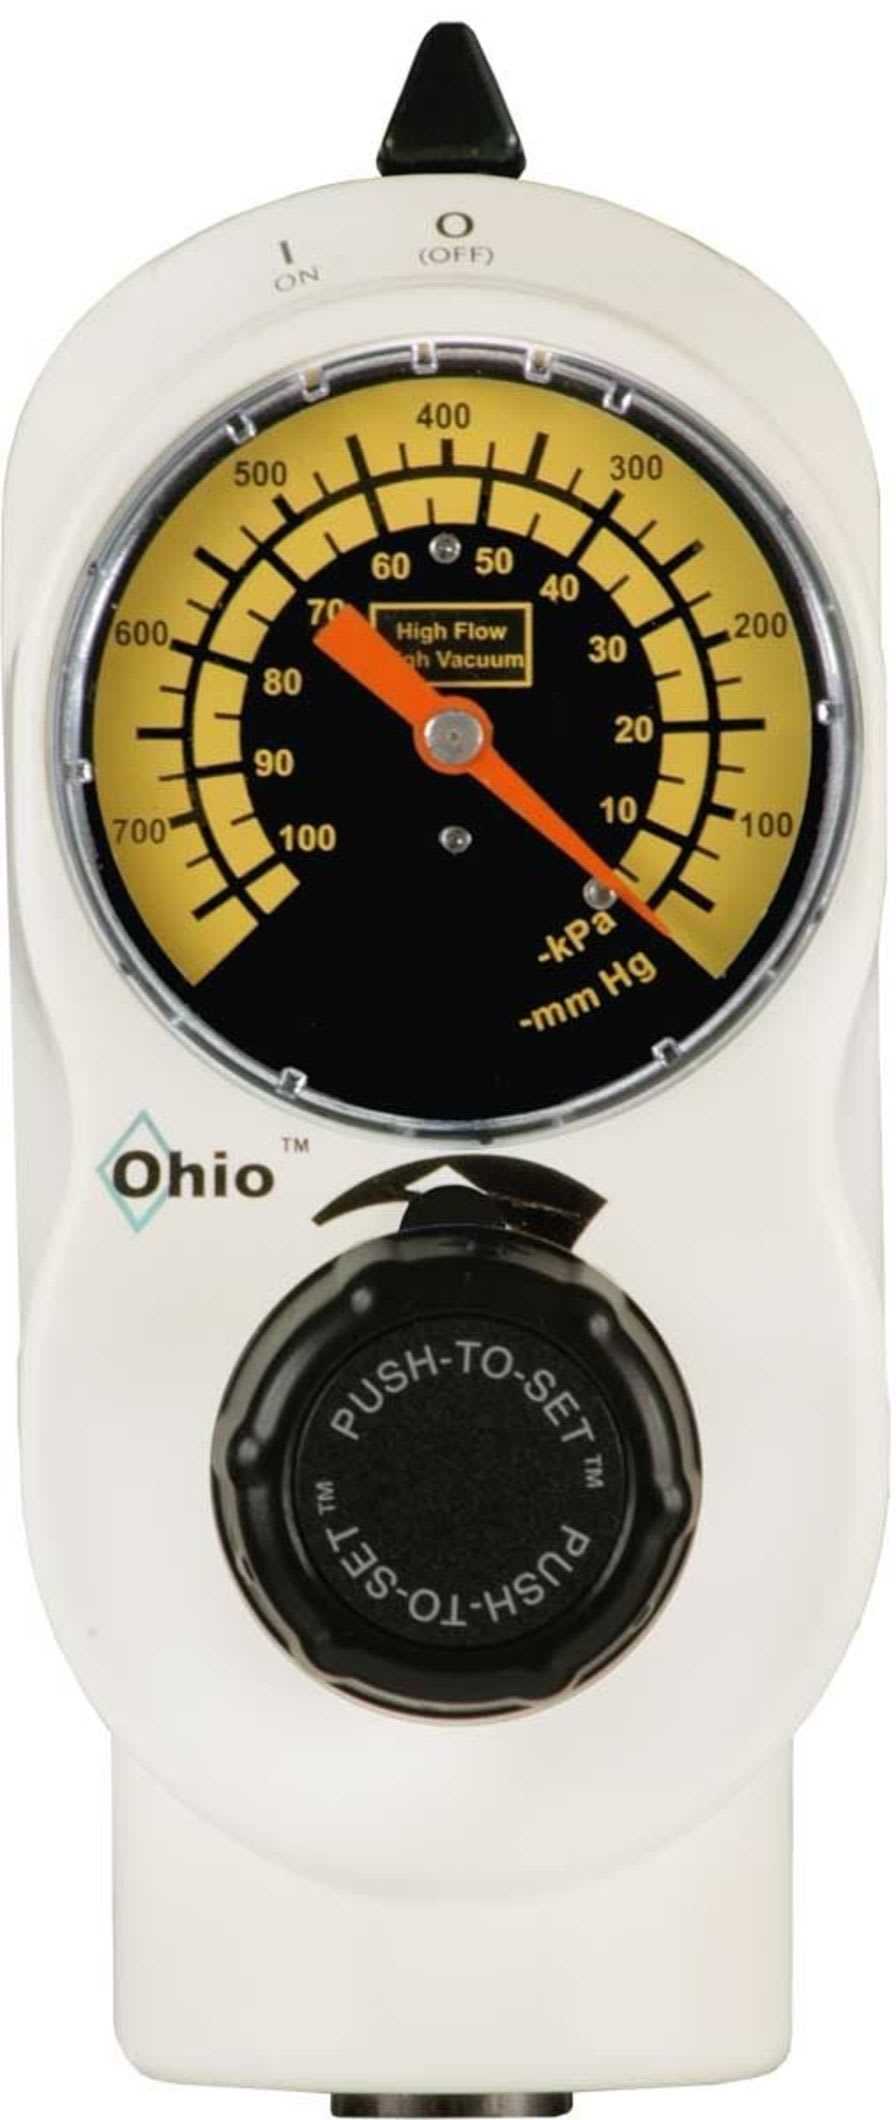 Vacuum regulator / plug-in type PUSH-TO-SET™ 1330 (ISO/CE) Ohio Medical